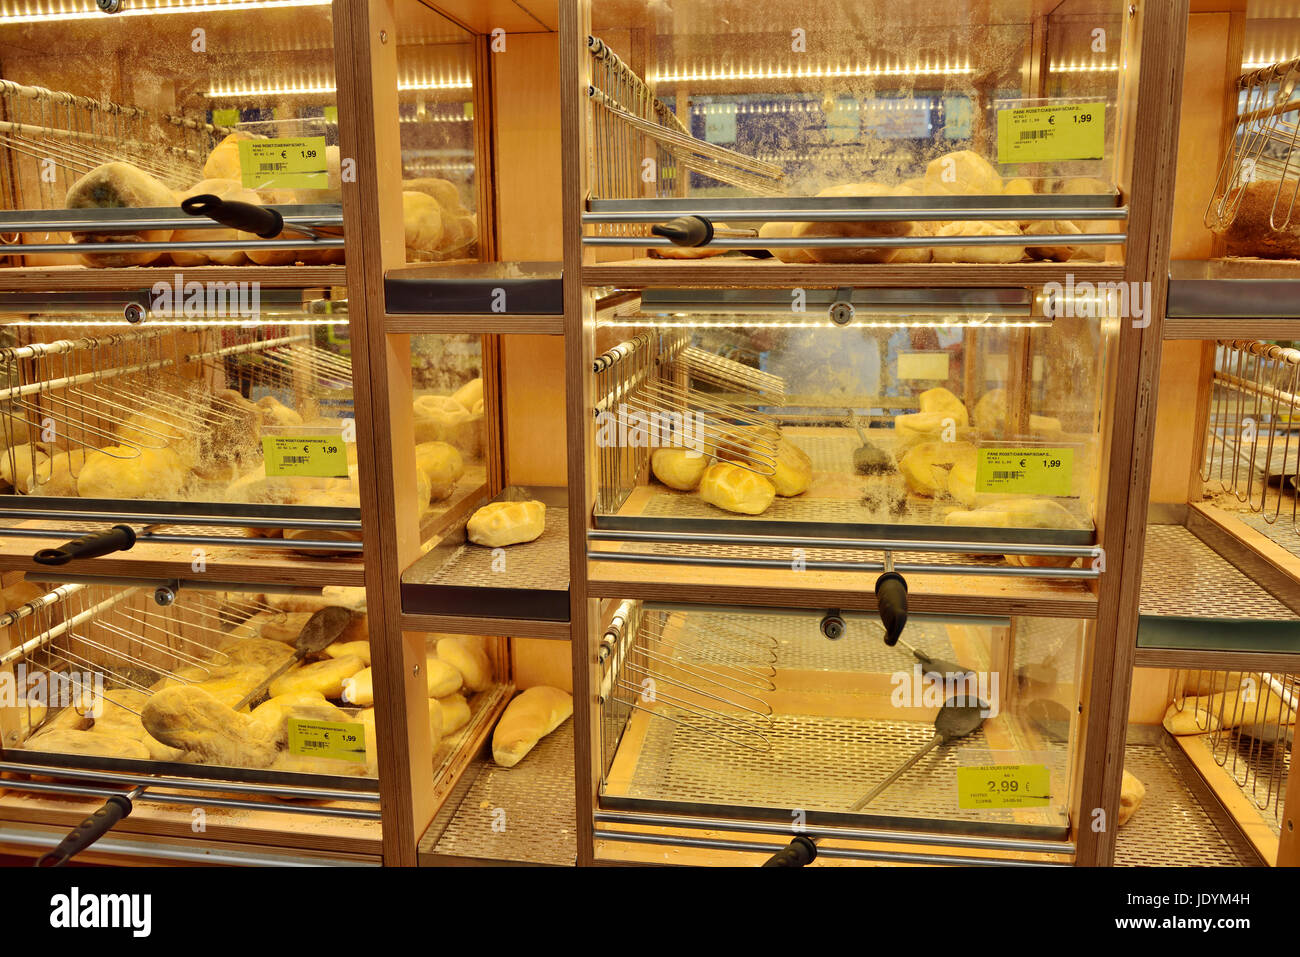 Supermercato italiano pane ripiani che impediscono alla gente di movimentazione di magazzino per essere igienico Foto Stock